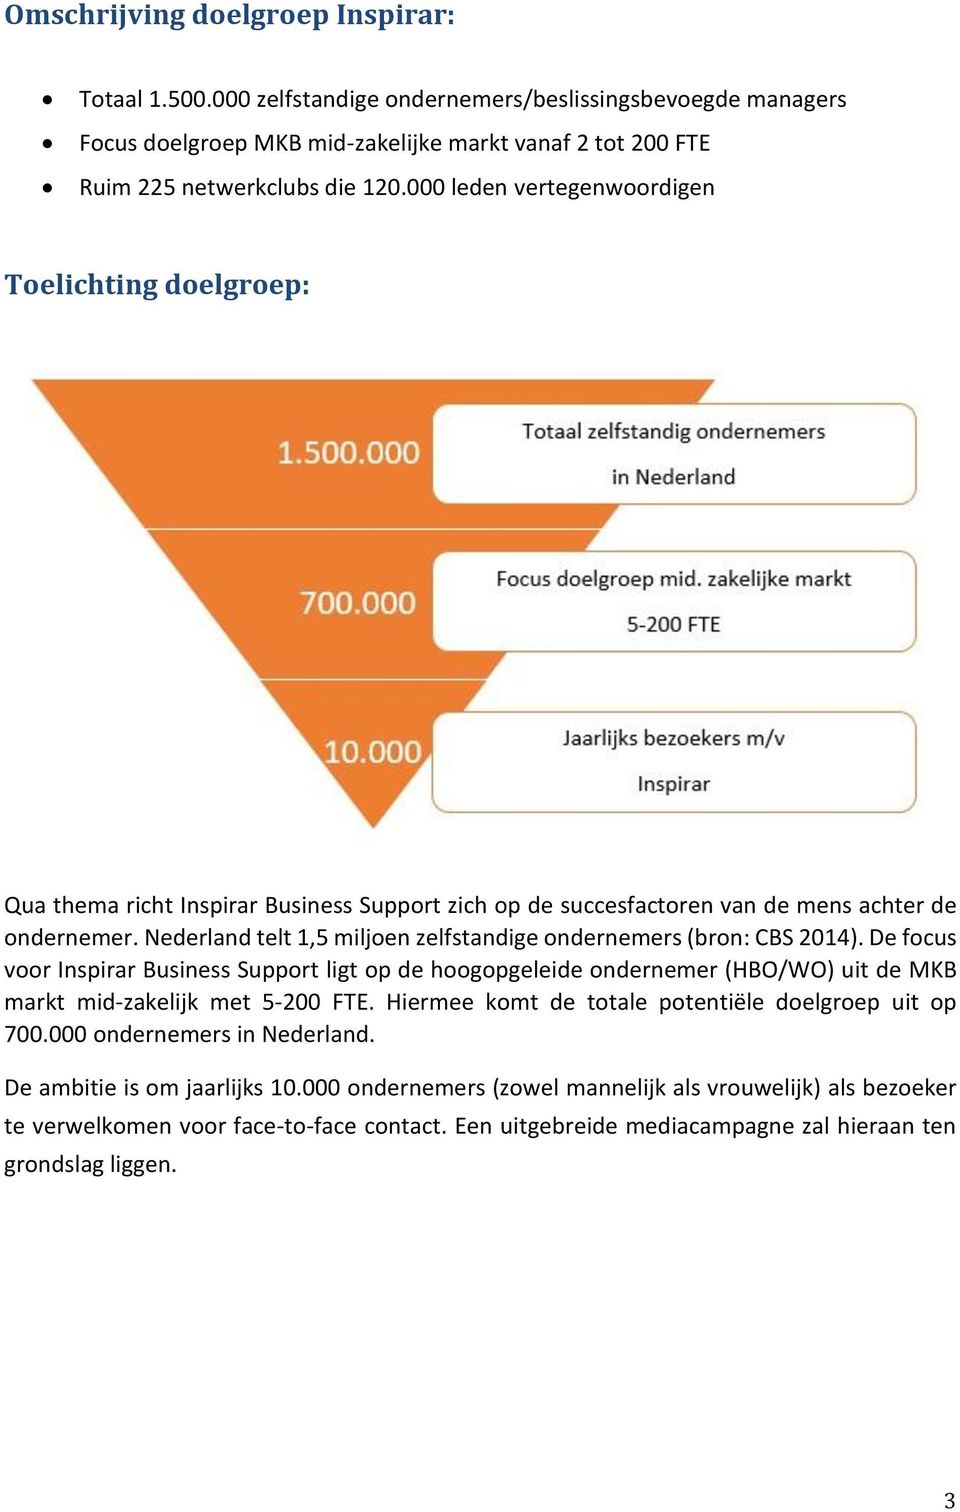 Nederland telt 1,5 miljoen zelfstandige ondernemers (bron: CBS 2014). De focus voor Inspirar Business Support ligt op de hoogopgeleide ondernemer (HBO/WO) uit de MKB markt mid-zakelijk met 5-200 FTE.